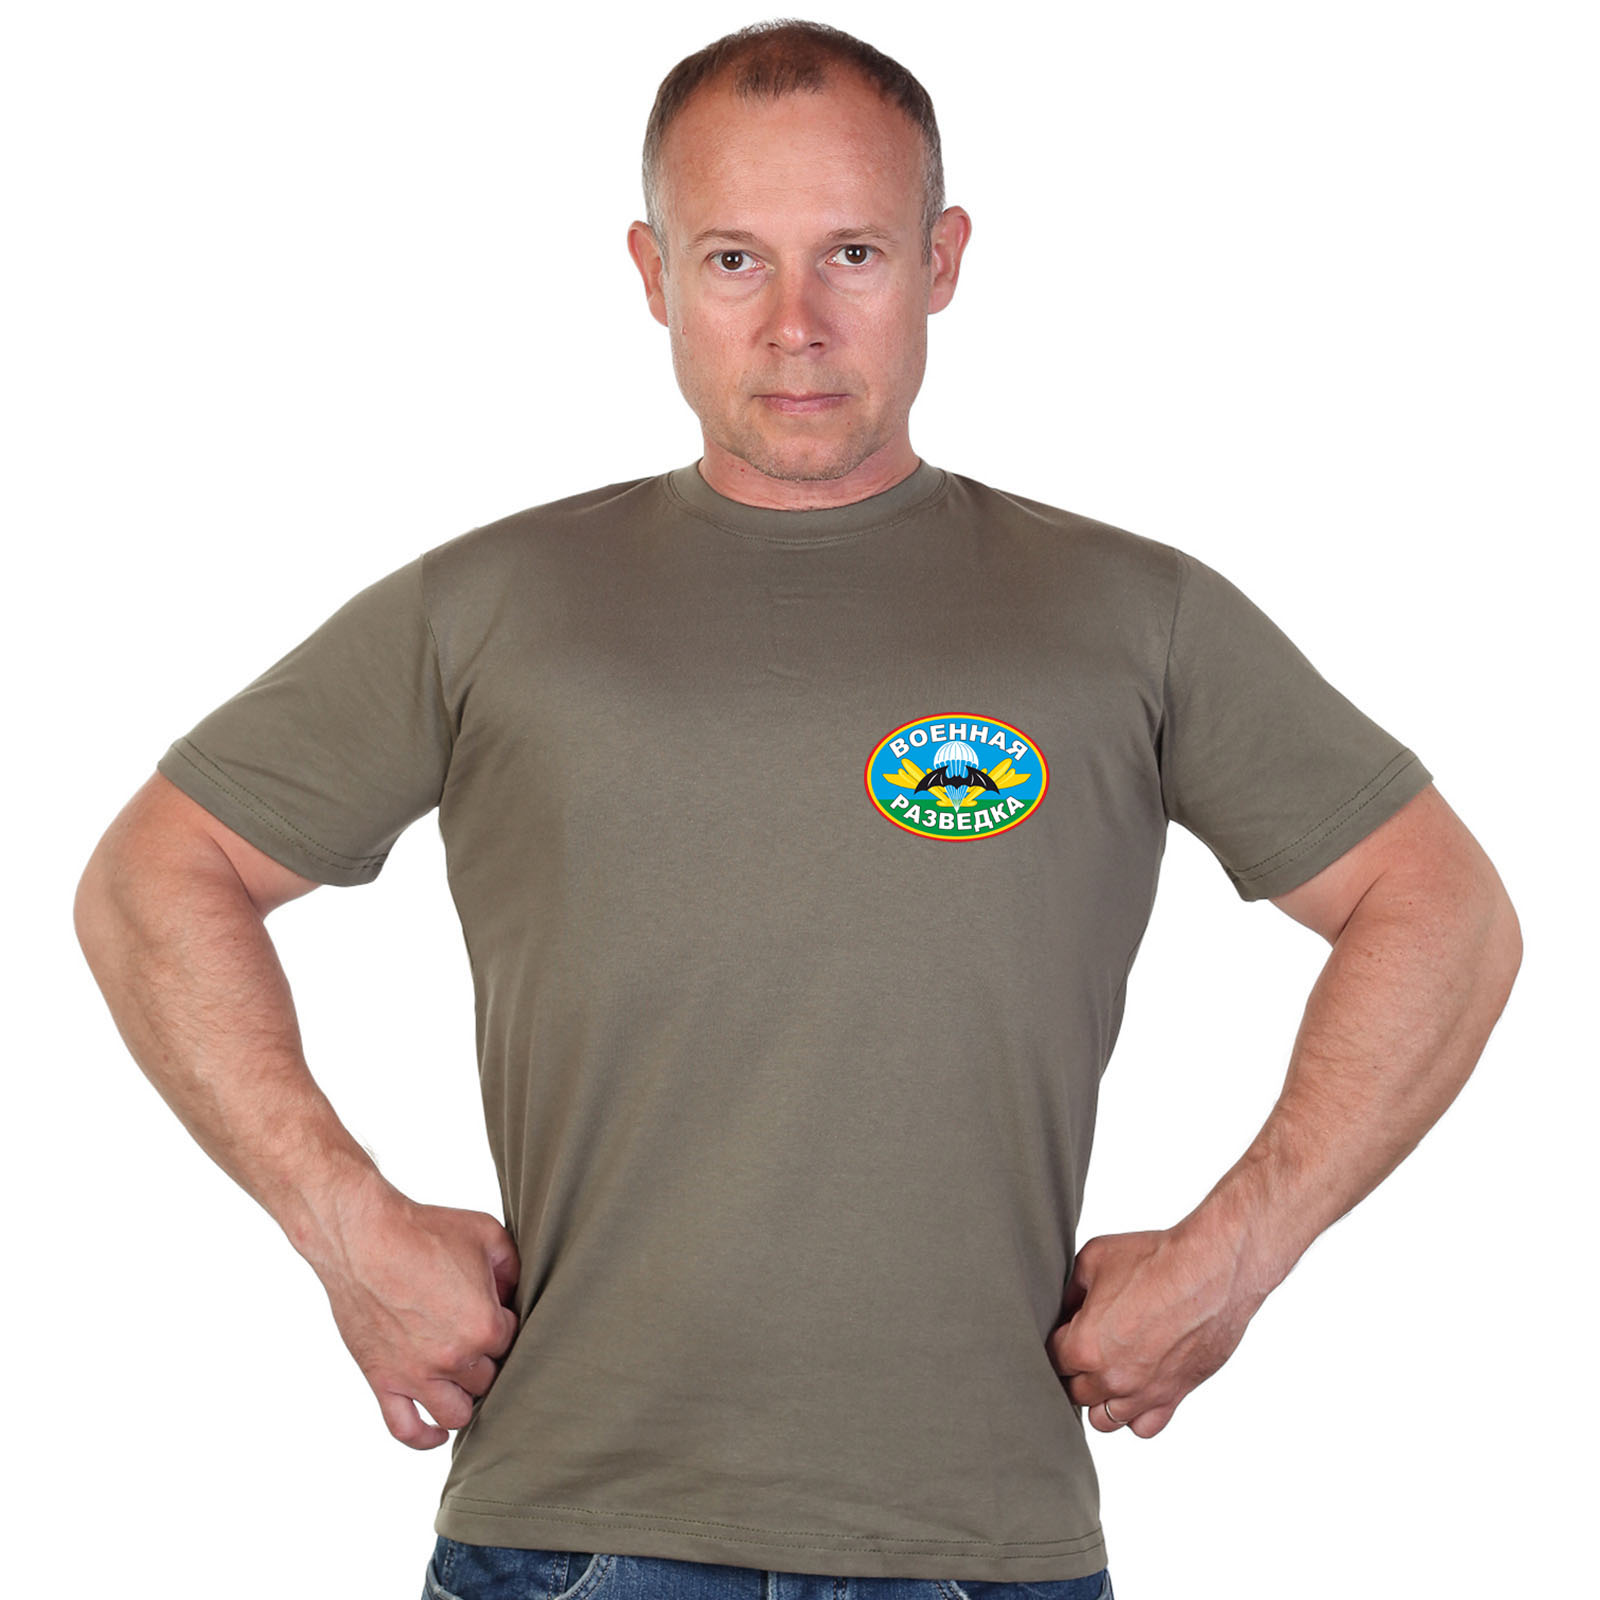 Оливковая футболка с термотрансфером Военной разведки 